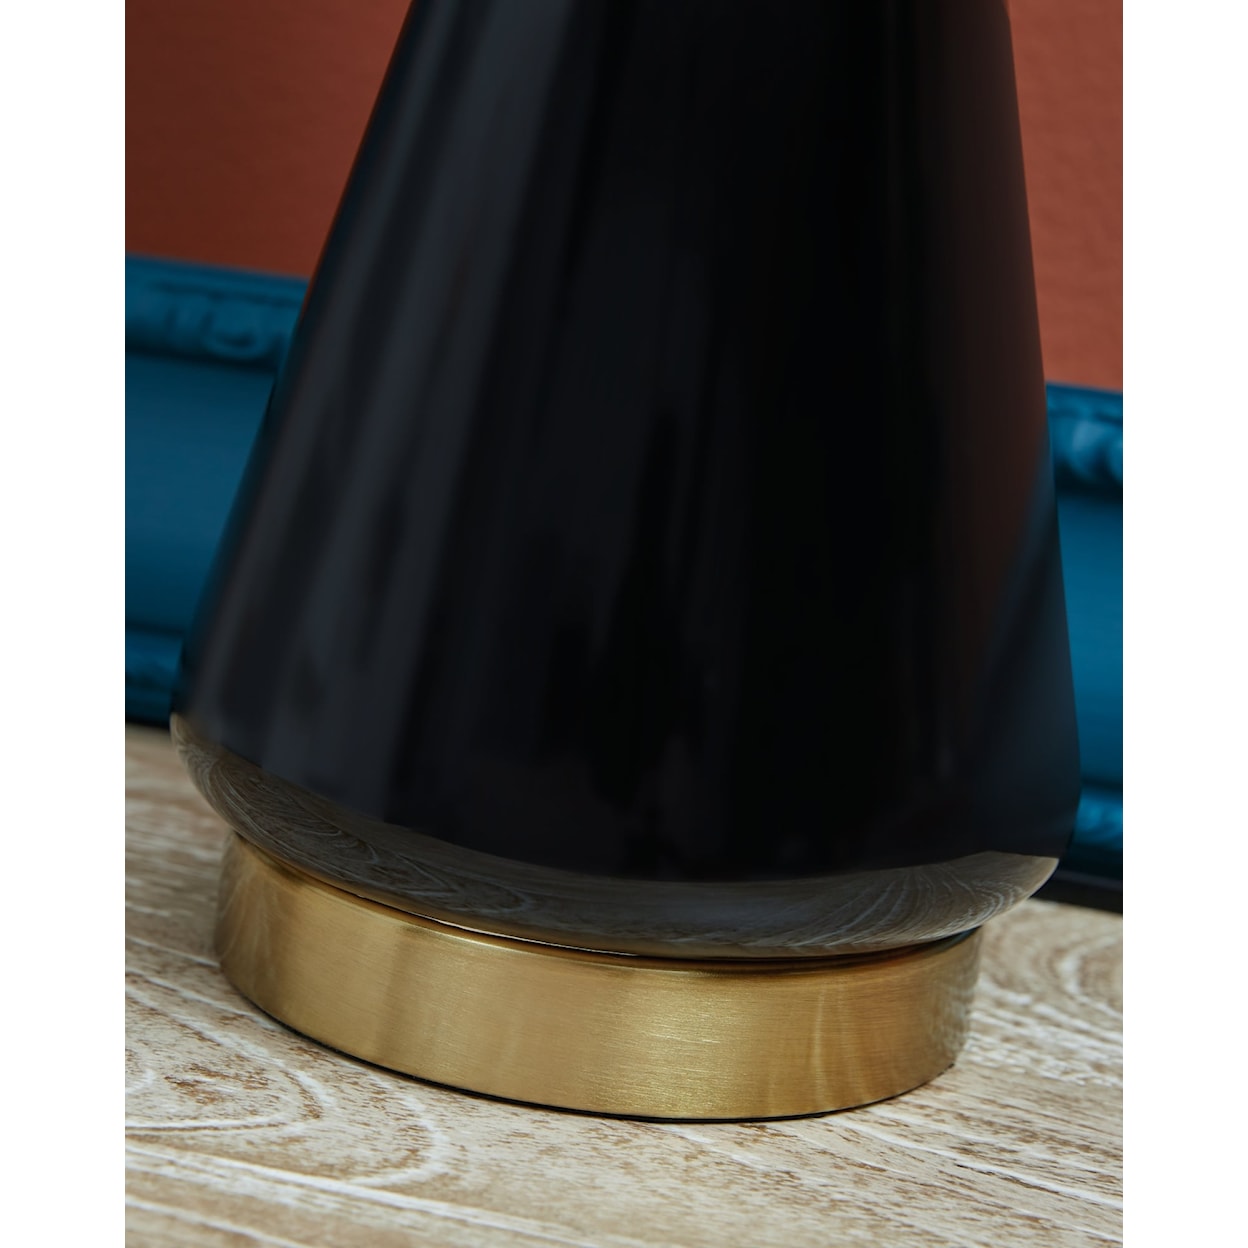 Signature Design Ackson Ceramic Table Lamp (Set of 2)